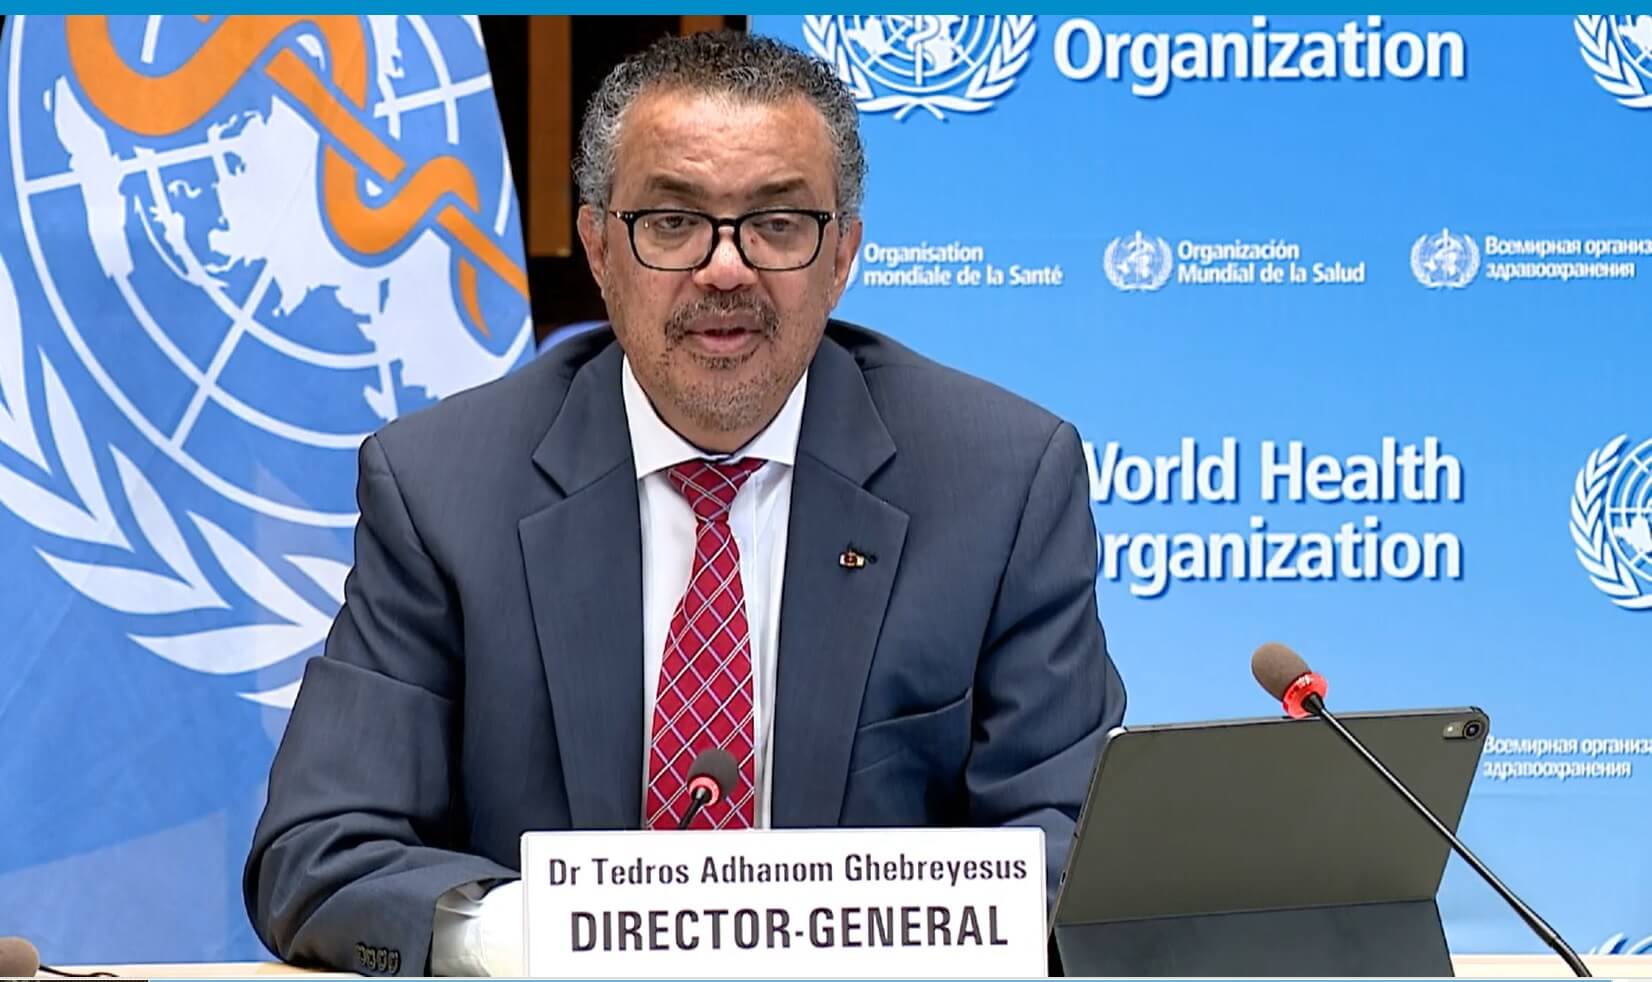 المدير العام لمنظمة الصحة العالمية الدكتور تيدروس أدهانوم غيبريسوس في مؤتمر صحفي من الفيديو على موقع الوكالة.